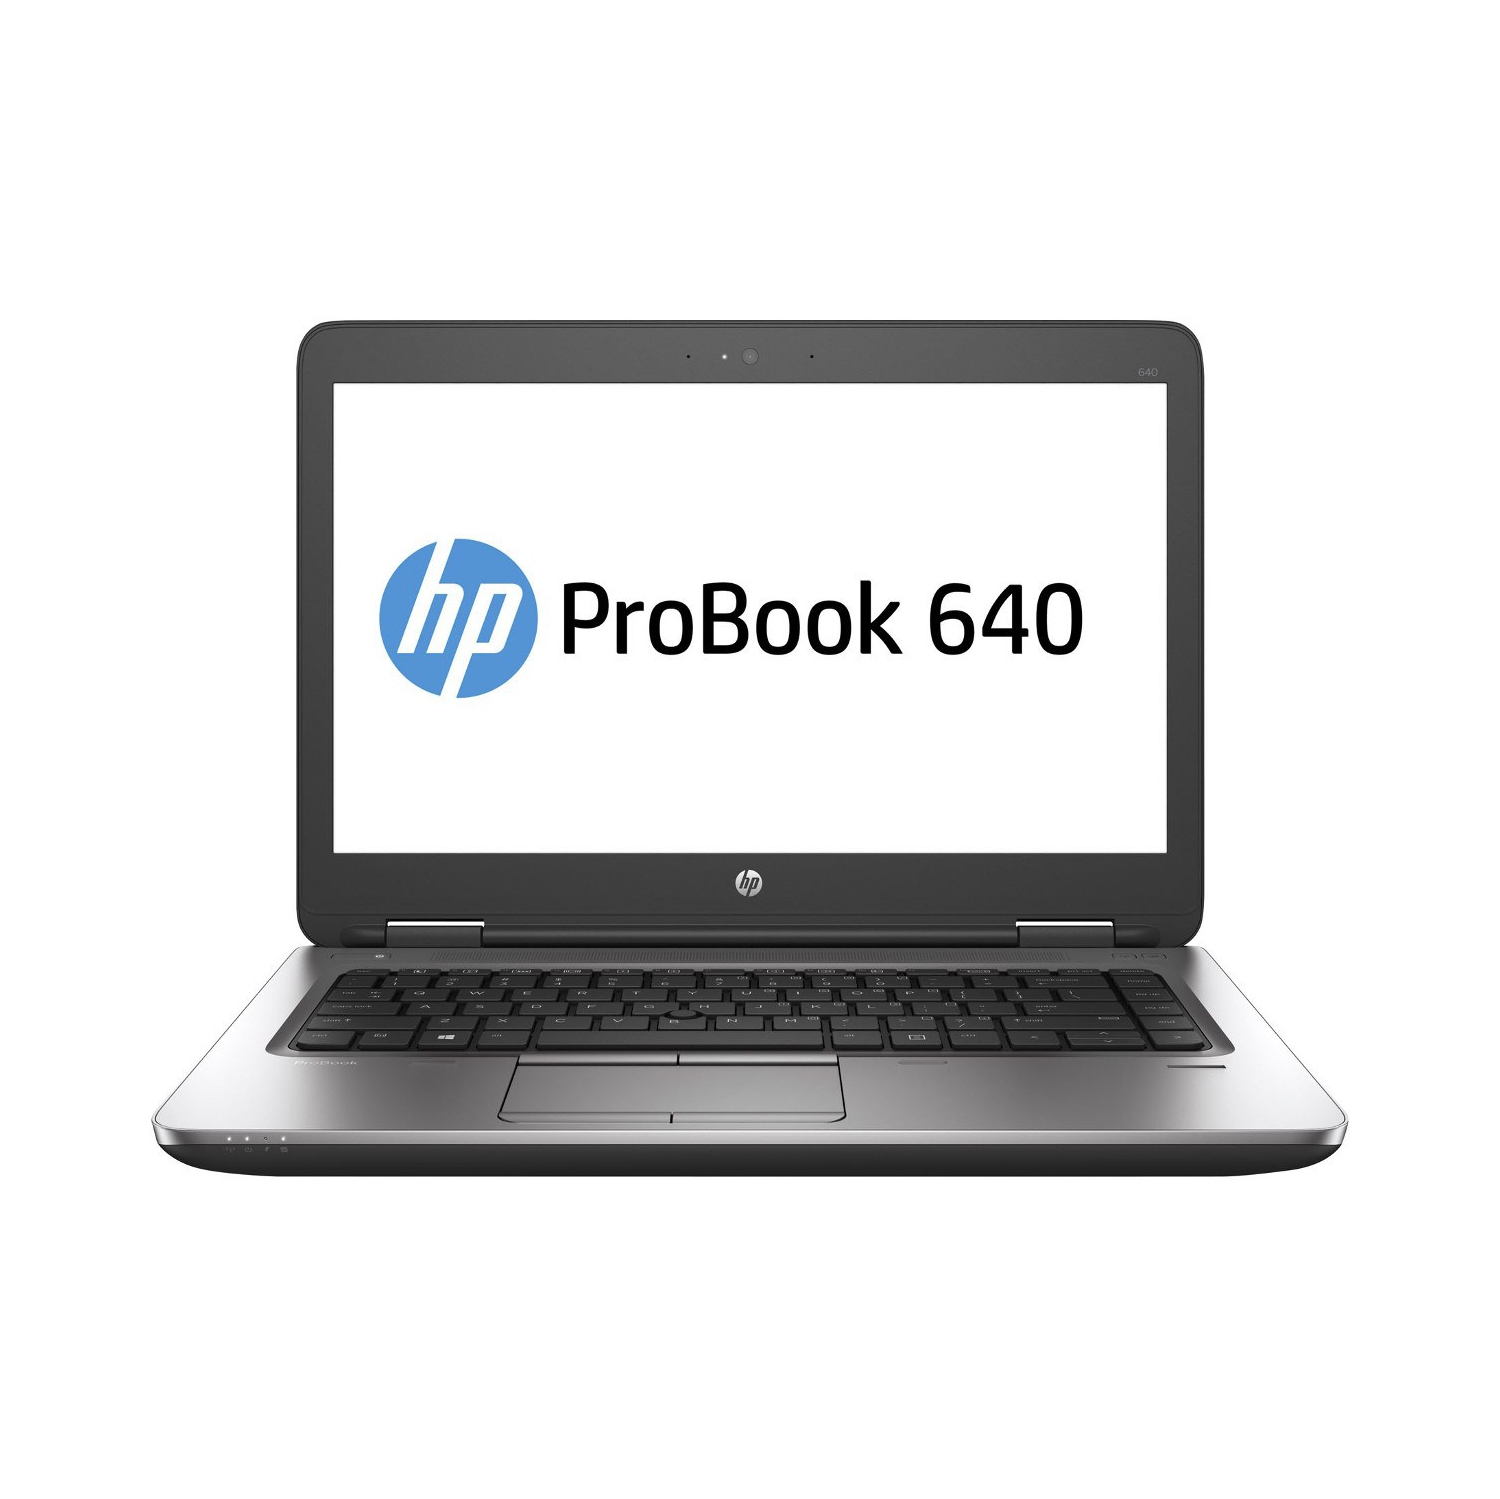 Refurbished (Excellent) - HP ProBook 640 G2 14" Laptop, Intel Core i7 6600U up to 3.4 GHz, 16G DDR4, 512G SSD, VGA, DP, Win10P64 (EN/FR/ES)